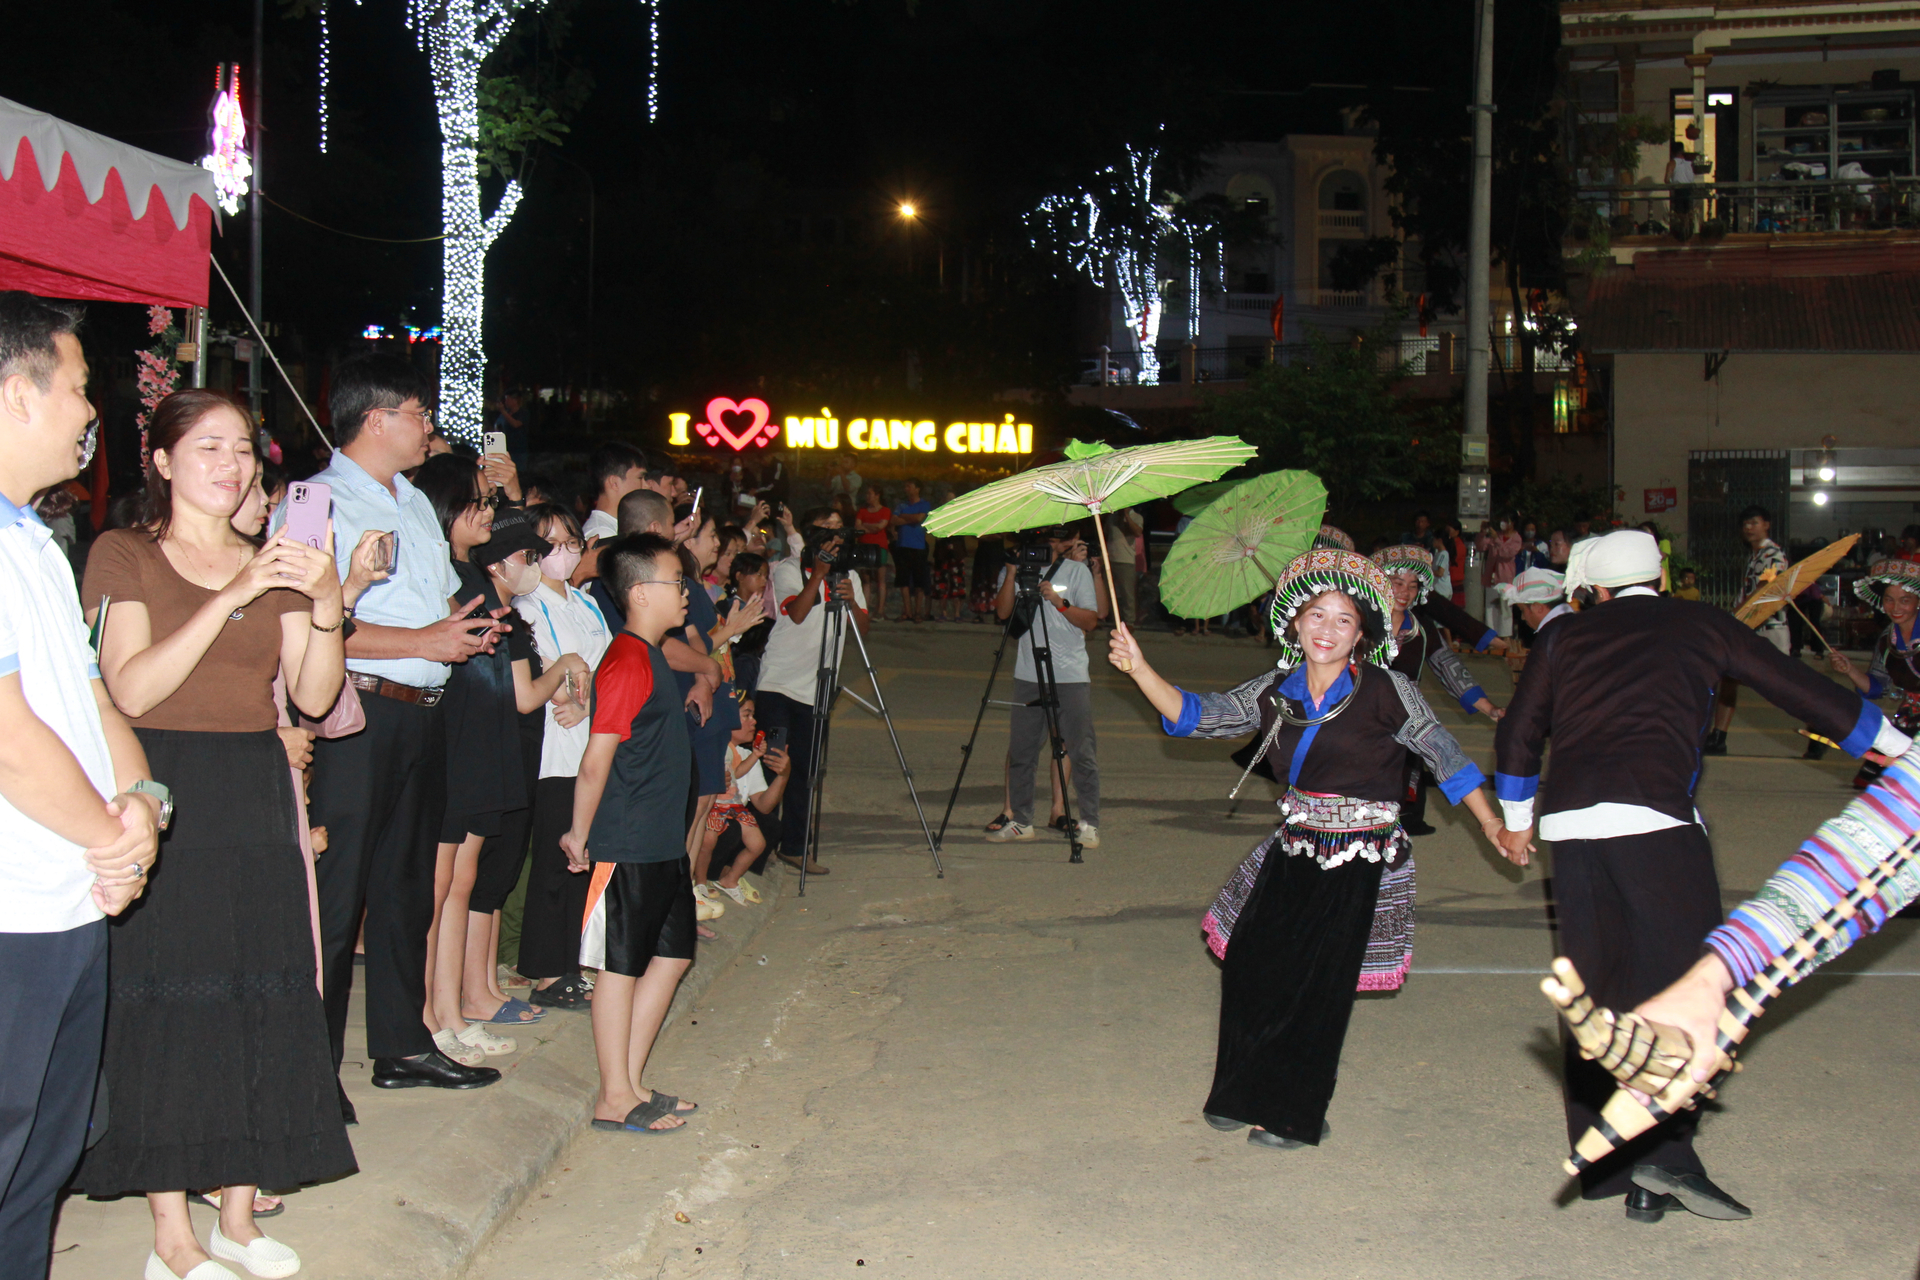 13 đoàn của 13 xã trong huyện biểu diễn nghệ thuật trên đường với sự cổ vũ của đông đảo người dân và du khách. Ảnh: Thanh Tiến.